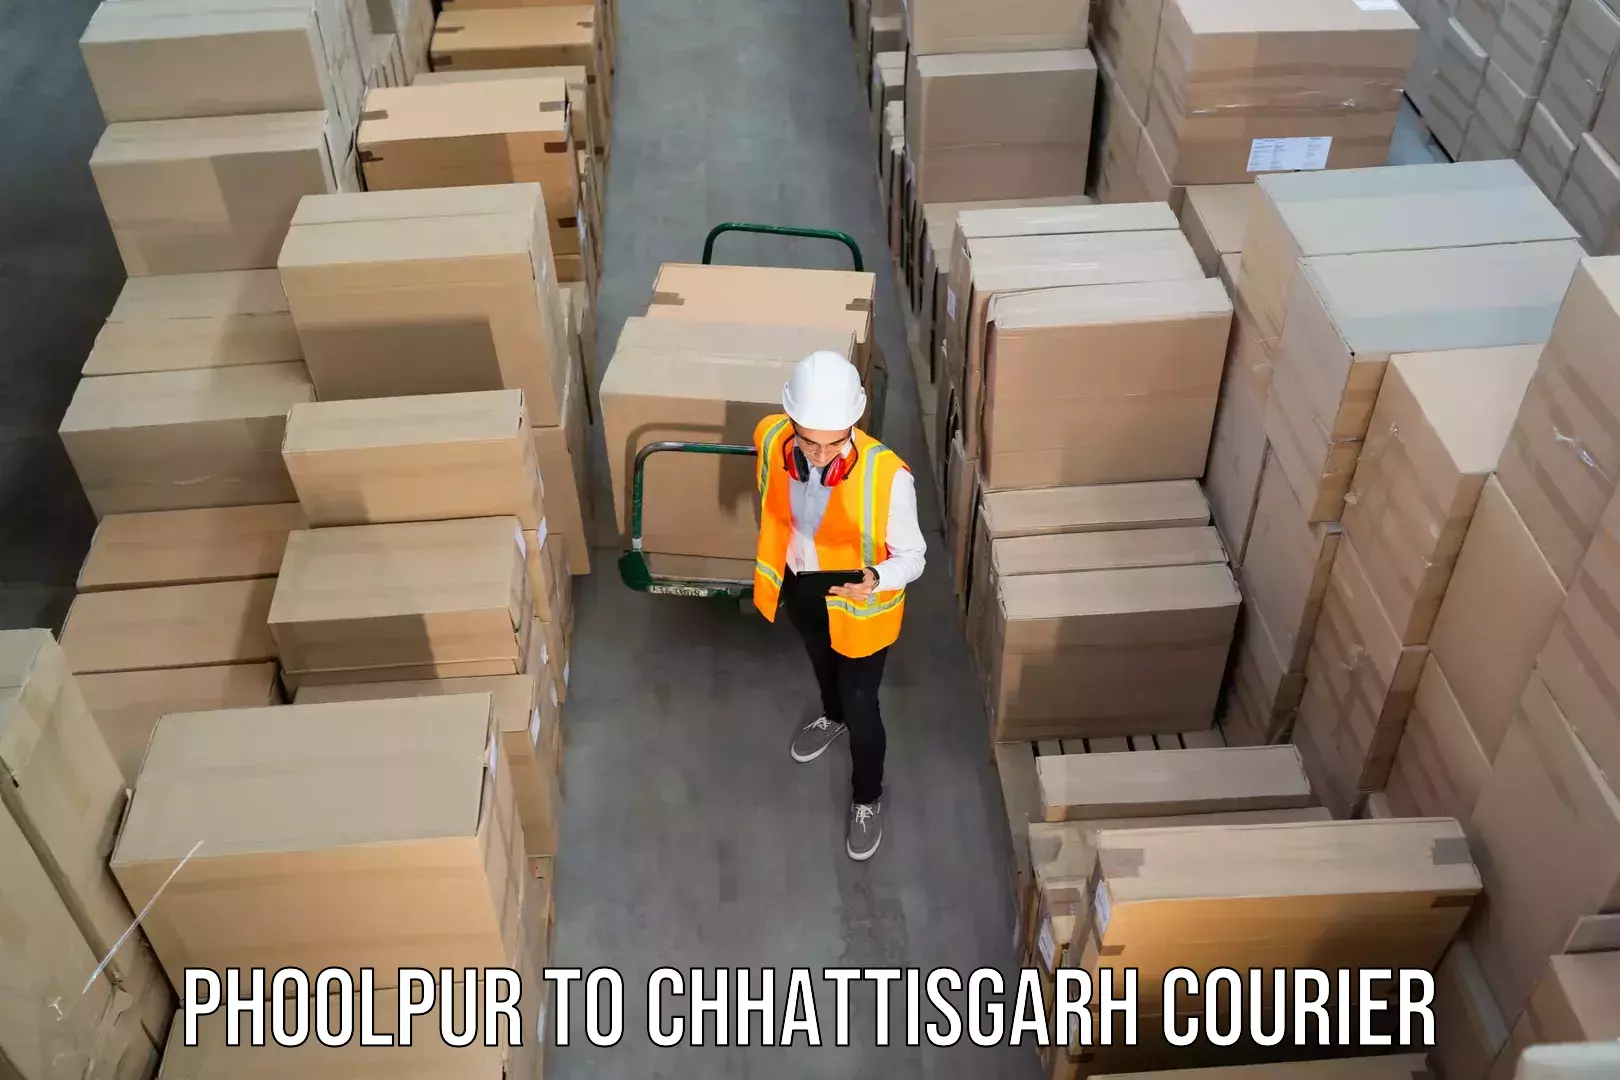 Courier service comparison Phoolpur to Chhattisgarh